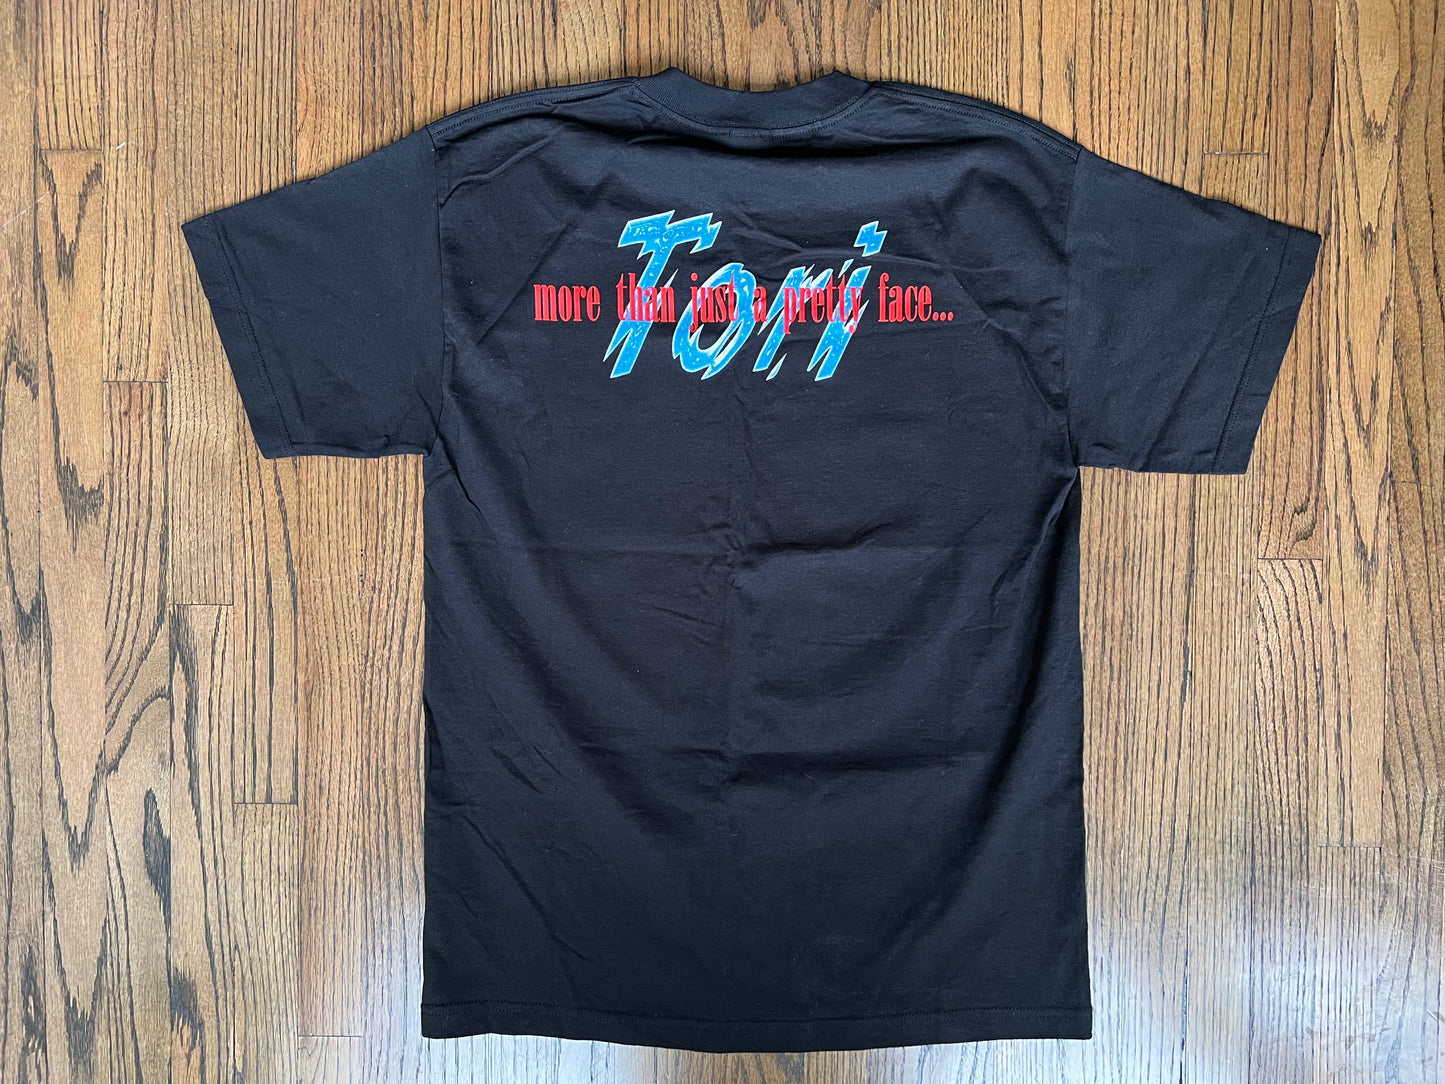 1999 WWF Tori “More than just a pretty face shirt